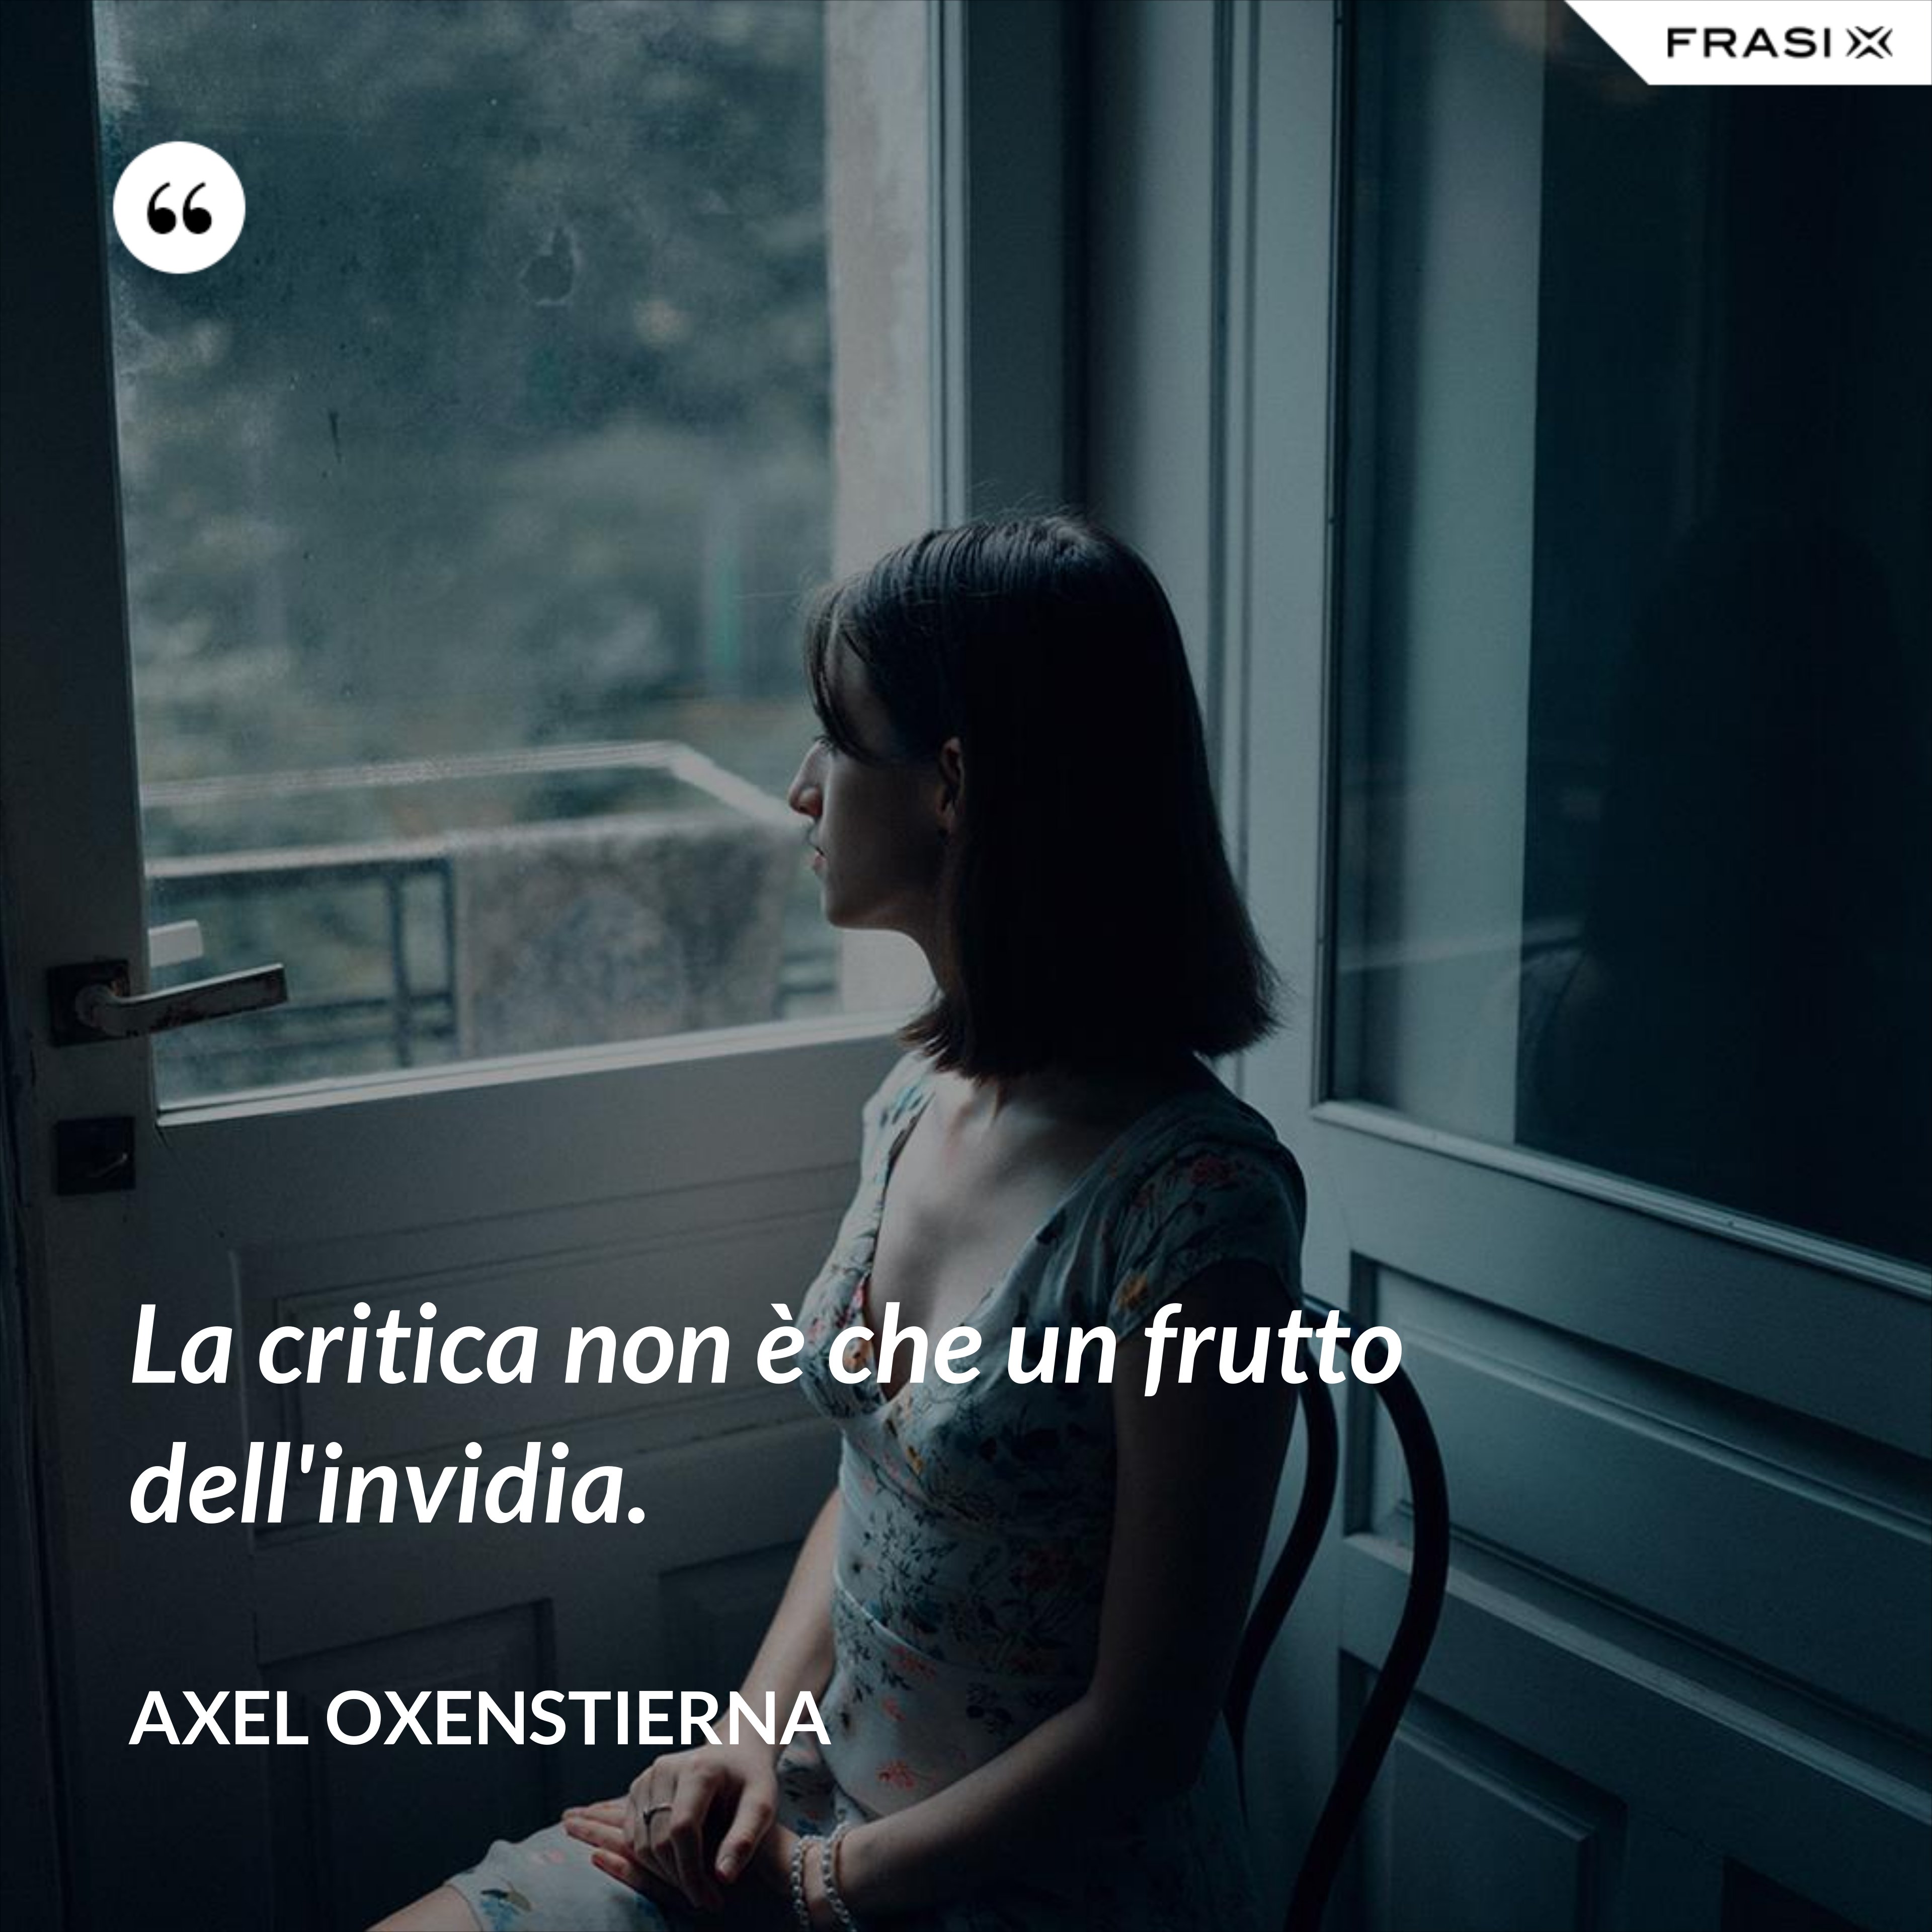 La critica non è che un frutto dell'invidia. - Axel Oxenstierna